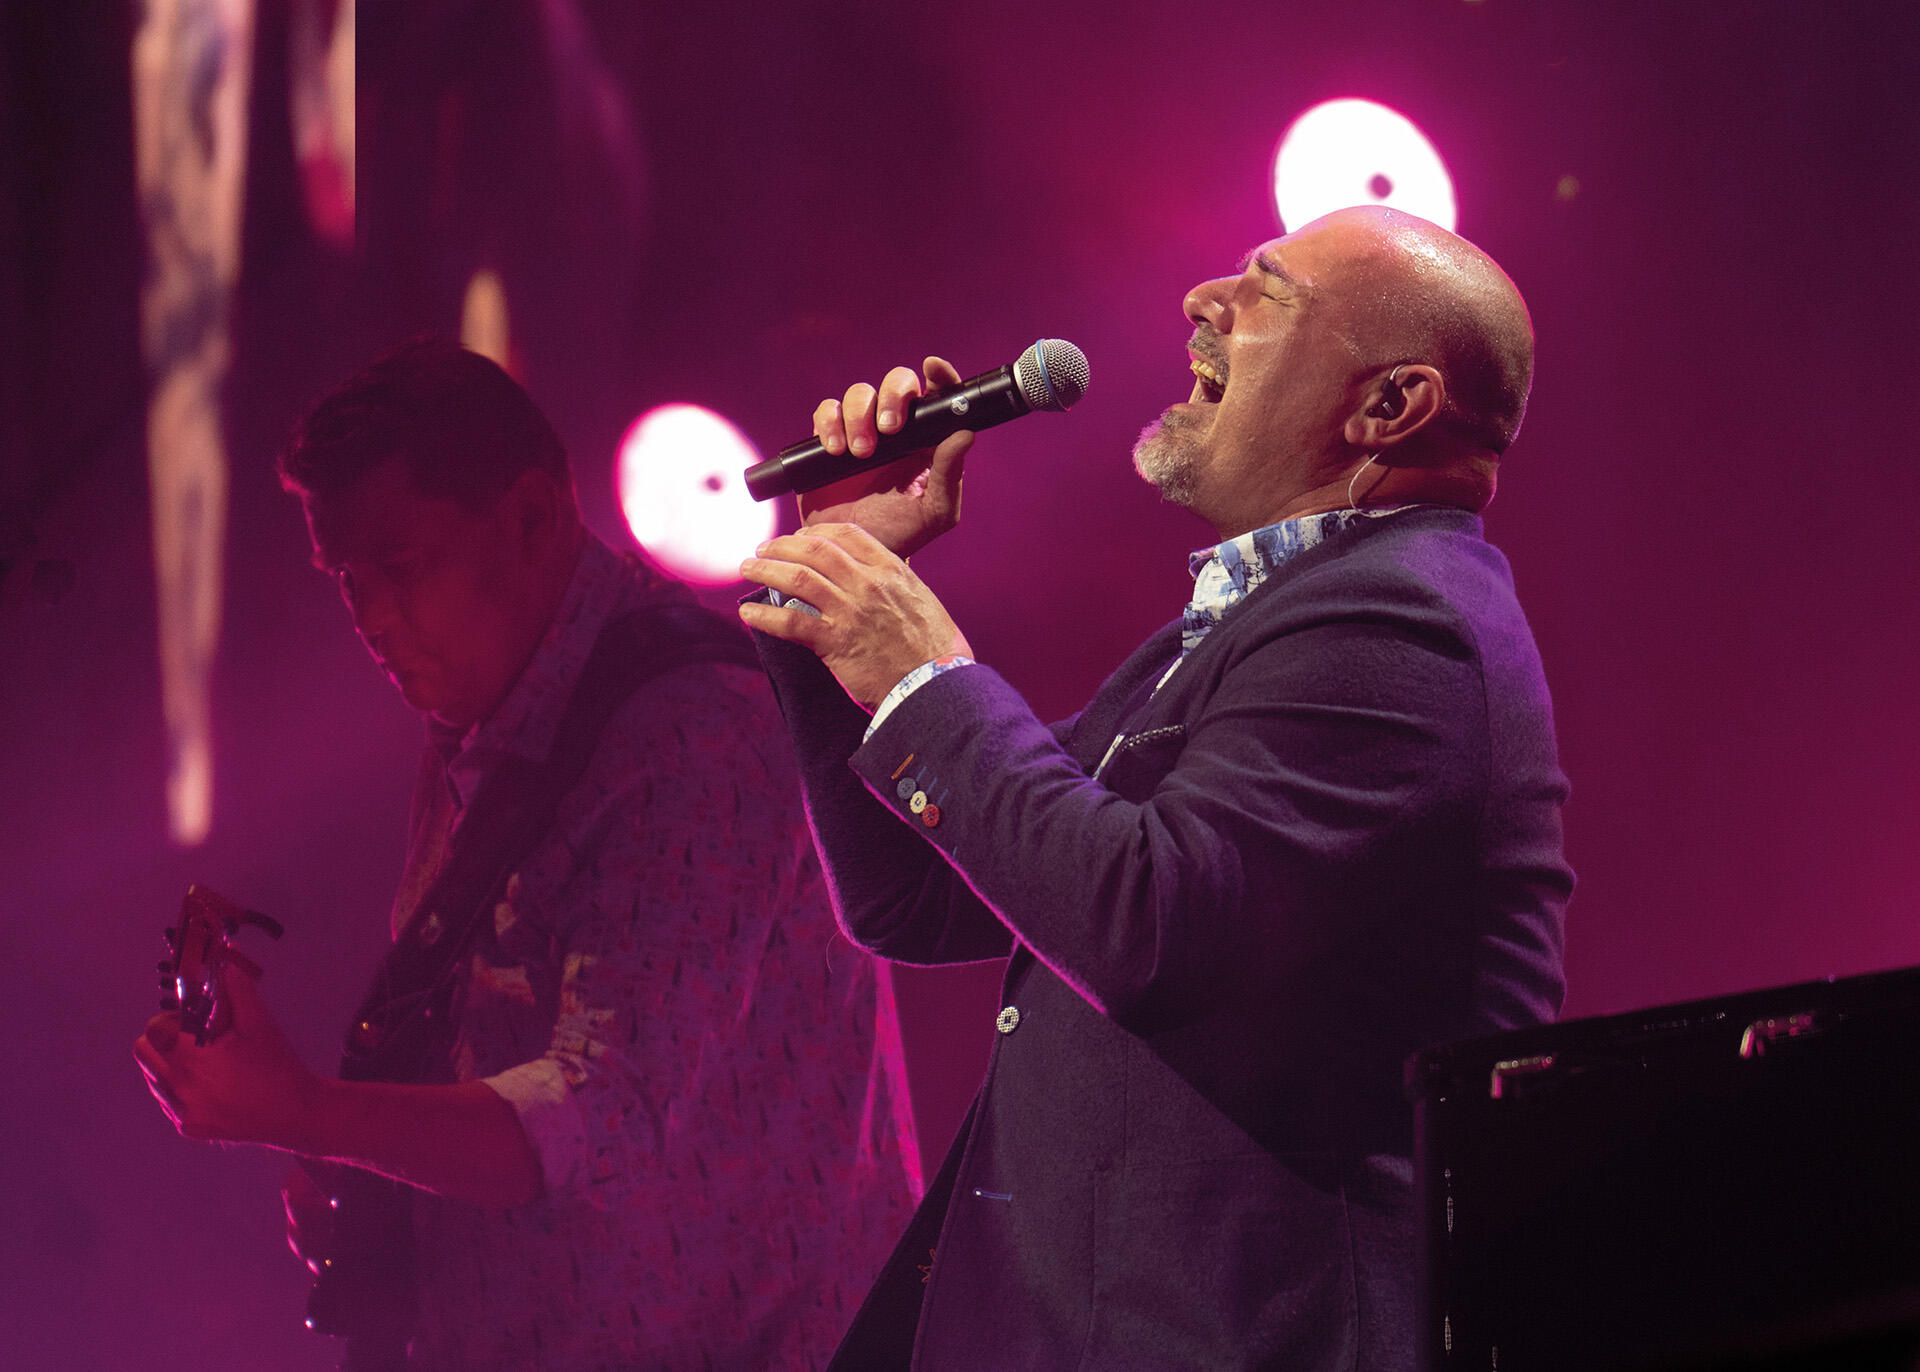 Alexander Broussard zingend met microfoon met paarse achtergrond